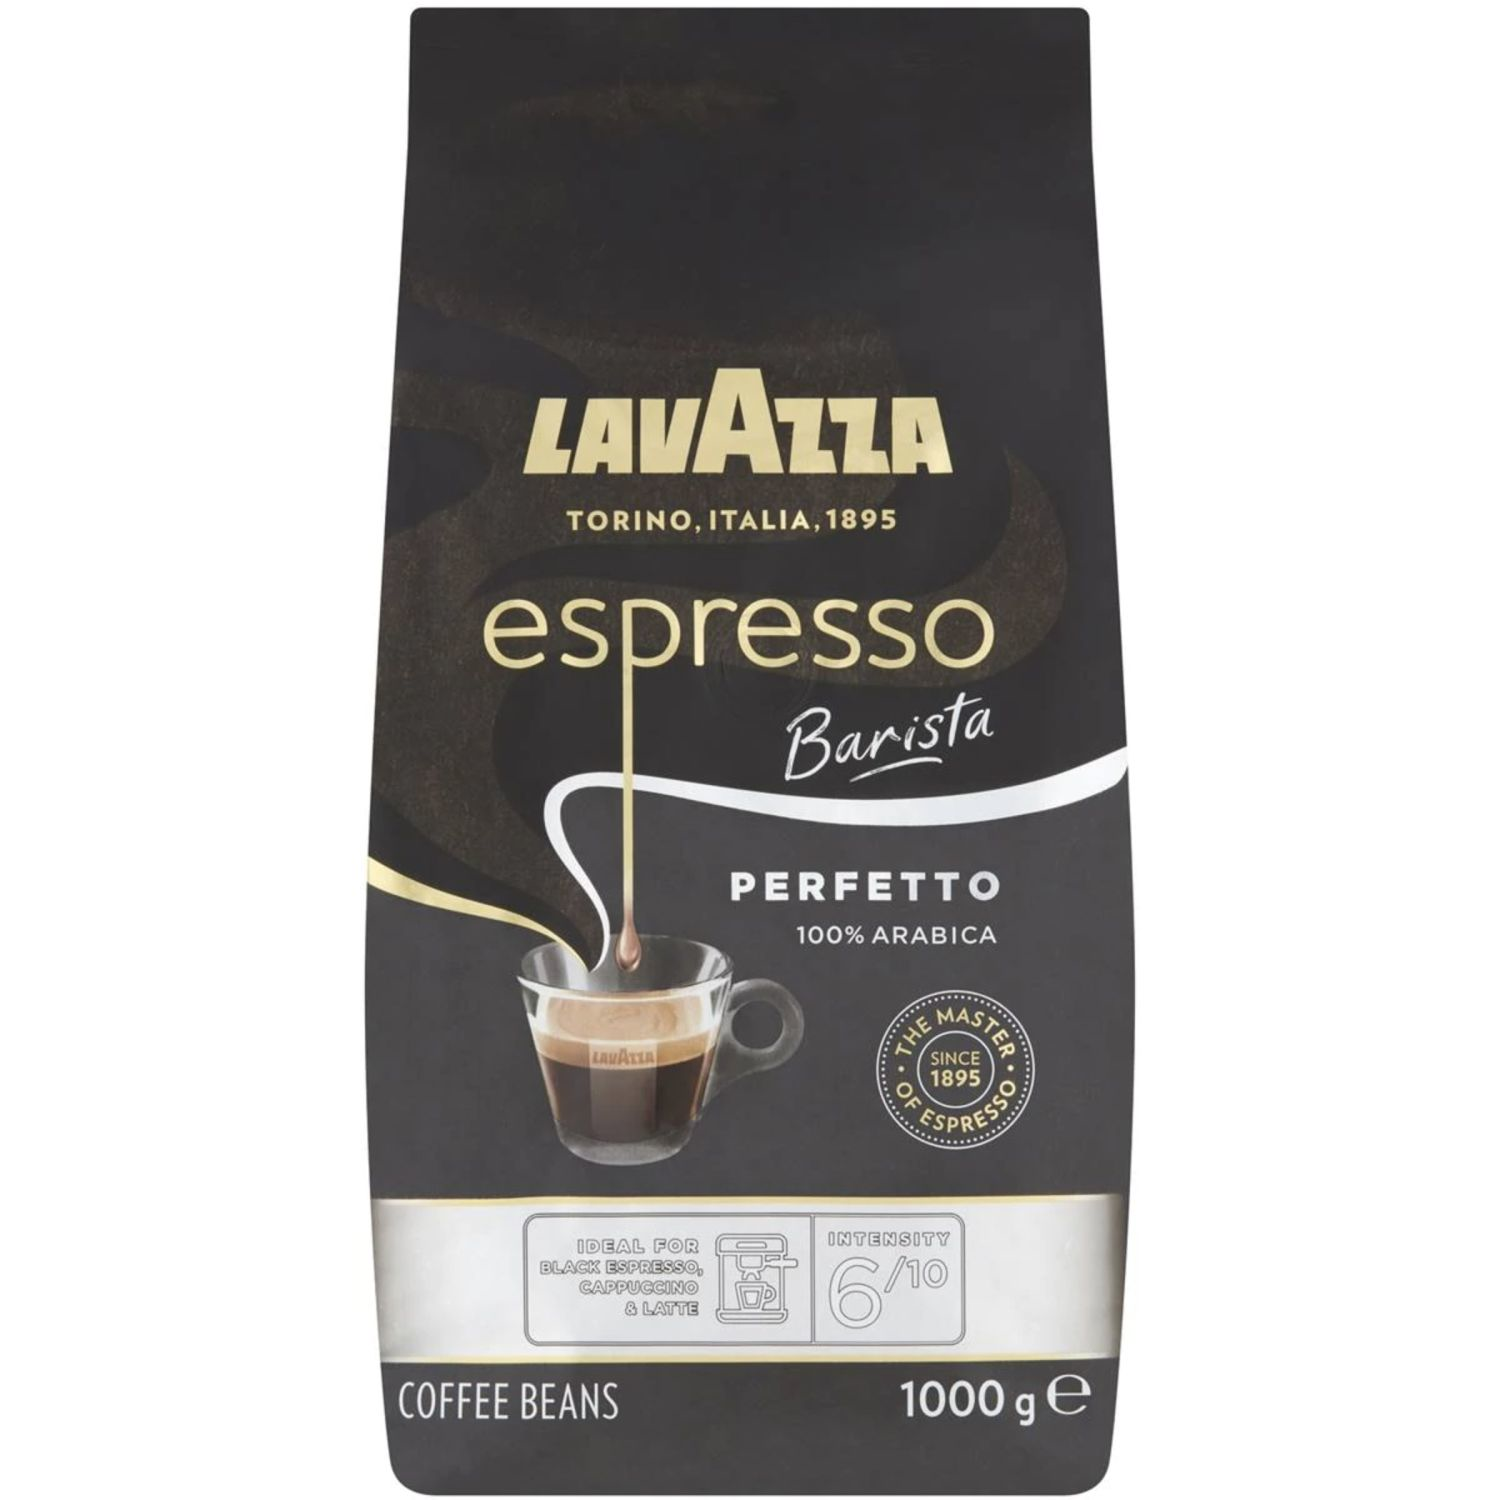 Lavazza Espresso Barista Perfetto Coffee Beans, 1 Kilogram